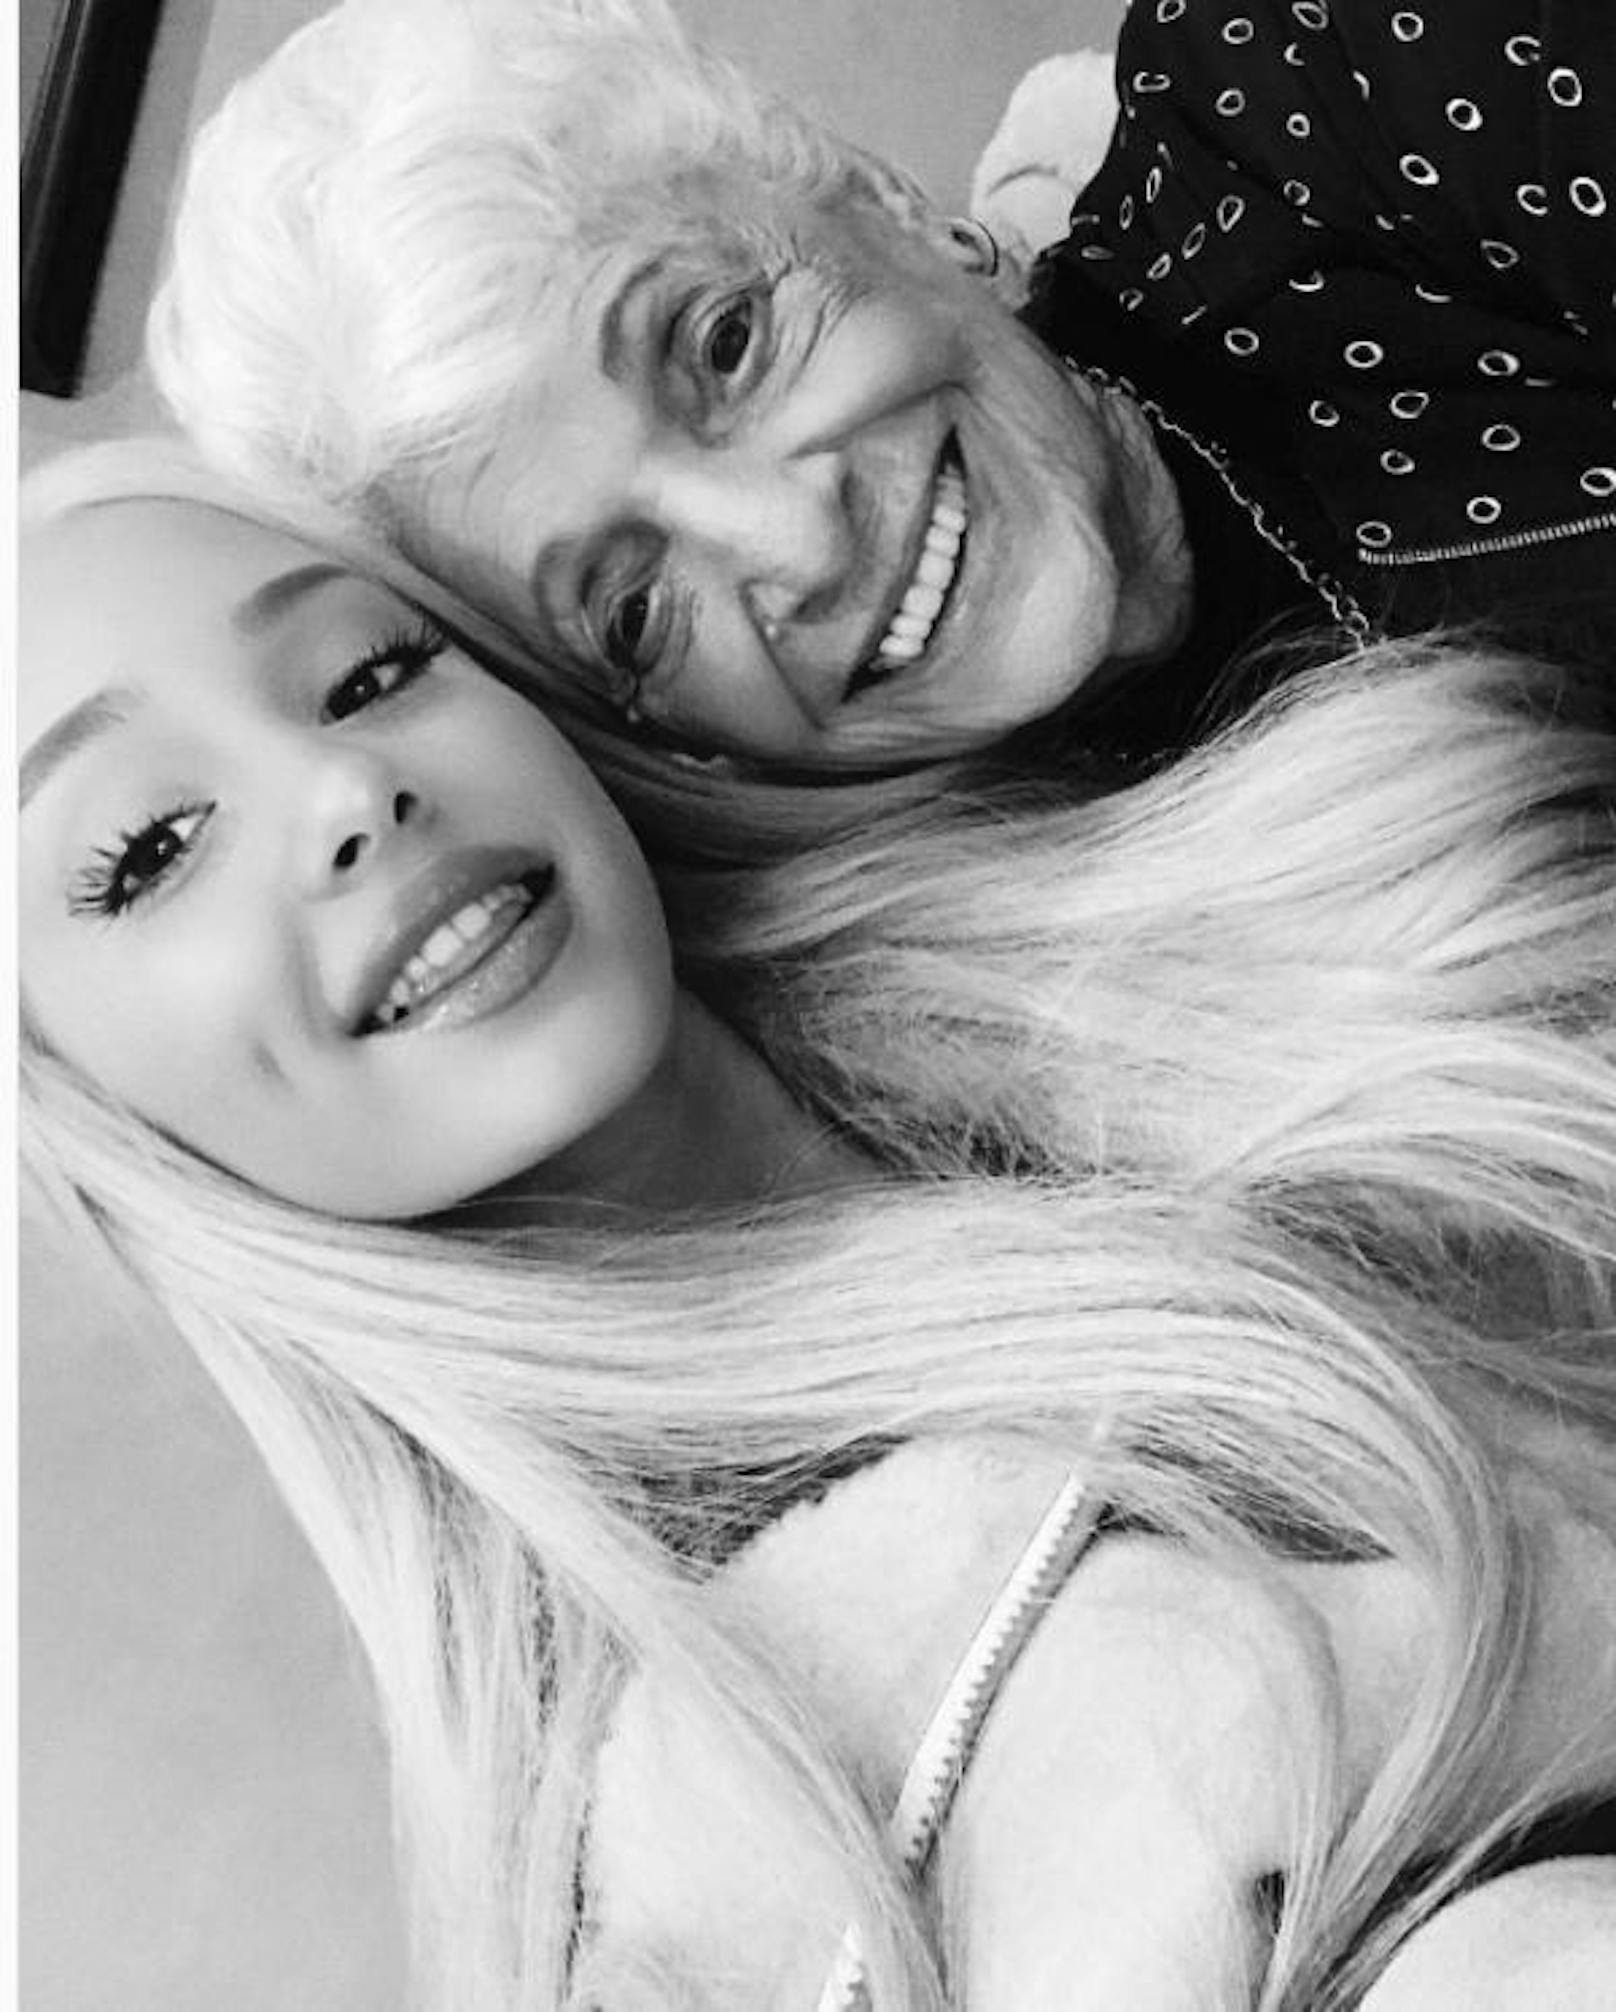 12.10.2017: Ariana Grande wünscht er besten italienischen Oma von allen einen tollen Geburtstag. Die fitte Dame ist jetzt 92! Grande kann sich über großartige Gene freuen.